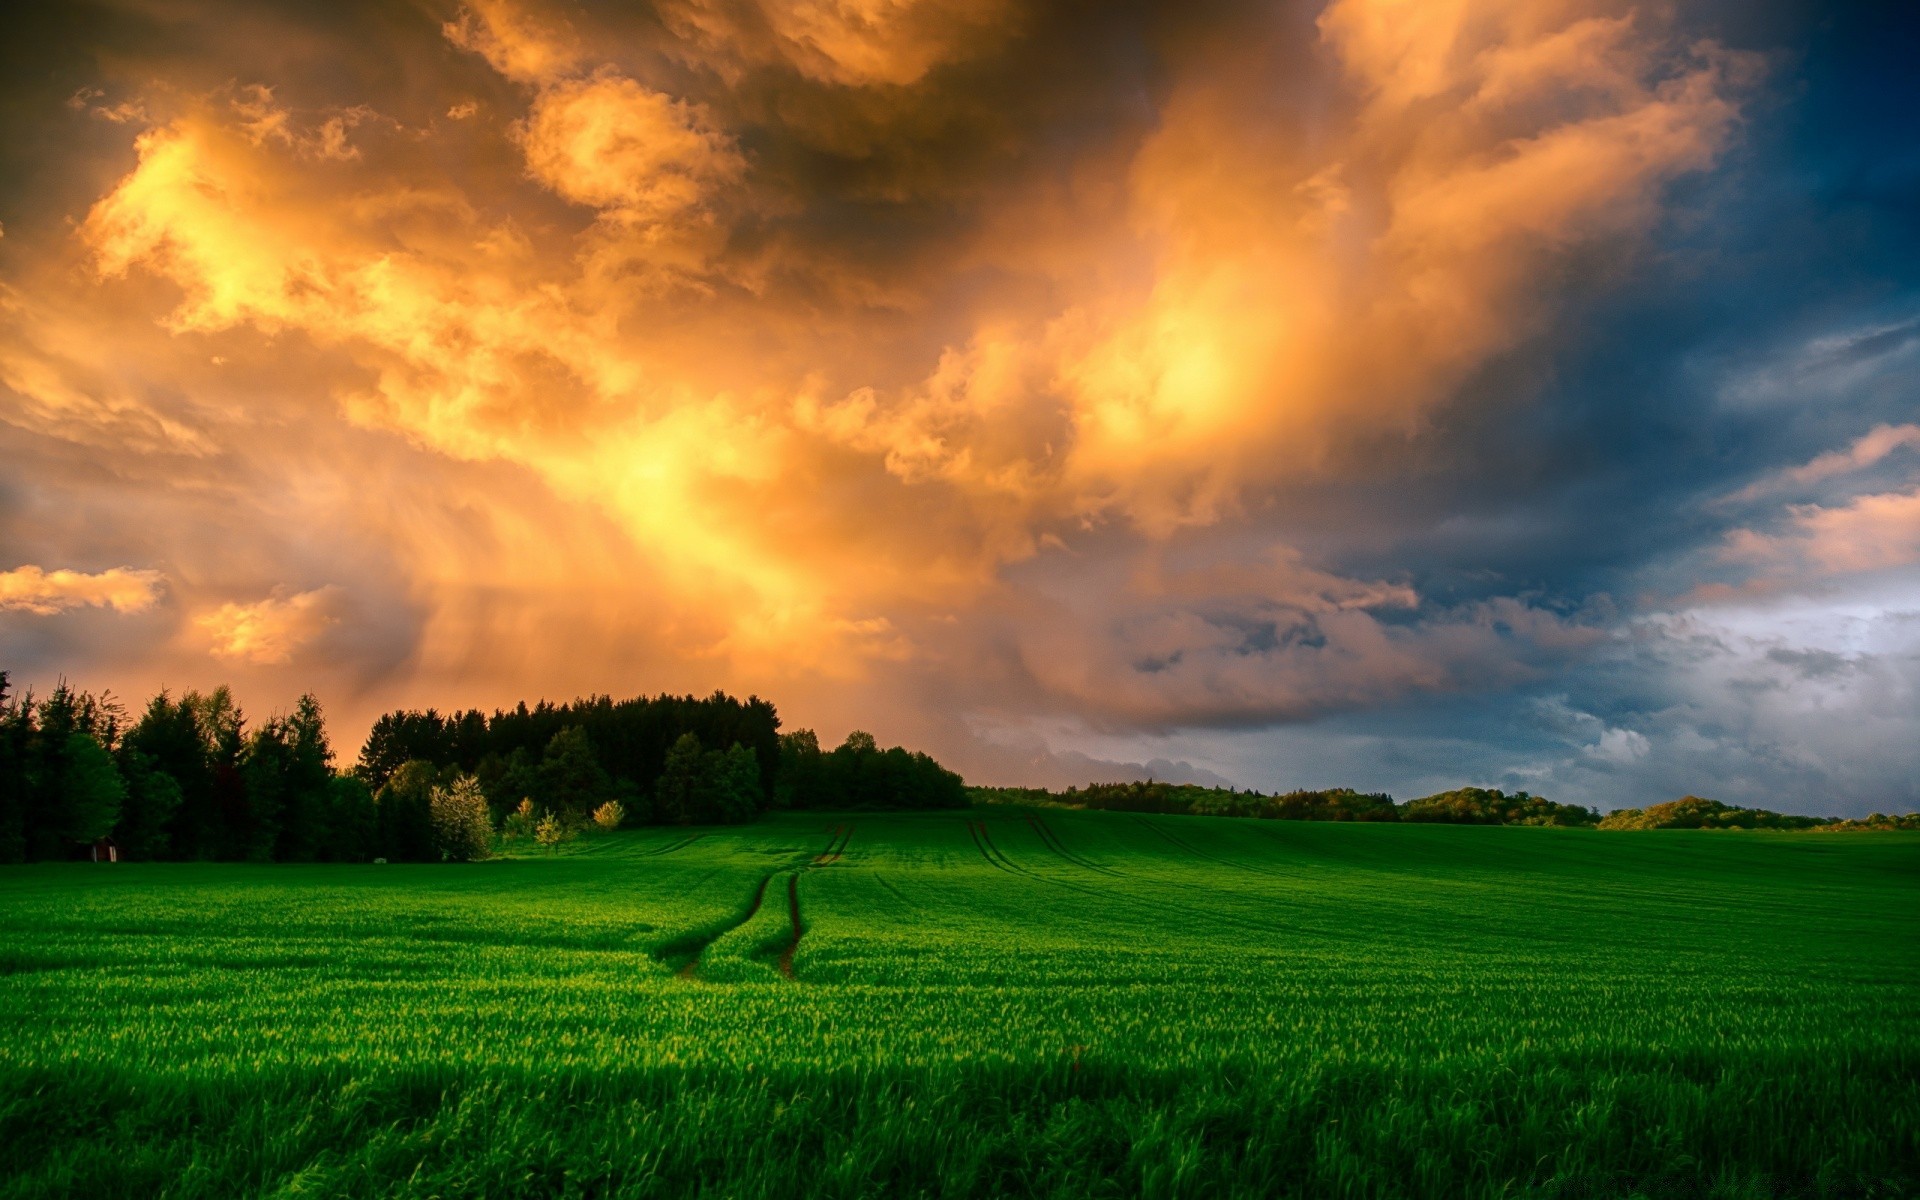 другие города сельских трава поле солнце сельской местности пейзаж пастбище природа хорошую погоду сенокос ферма рассвет закат небо горизонт облачно облако лето